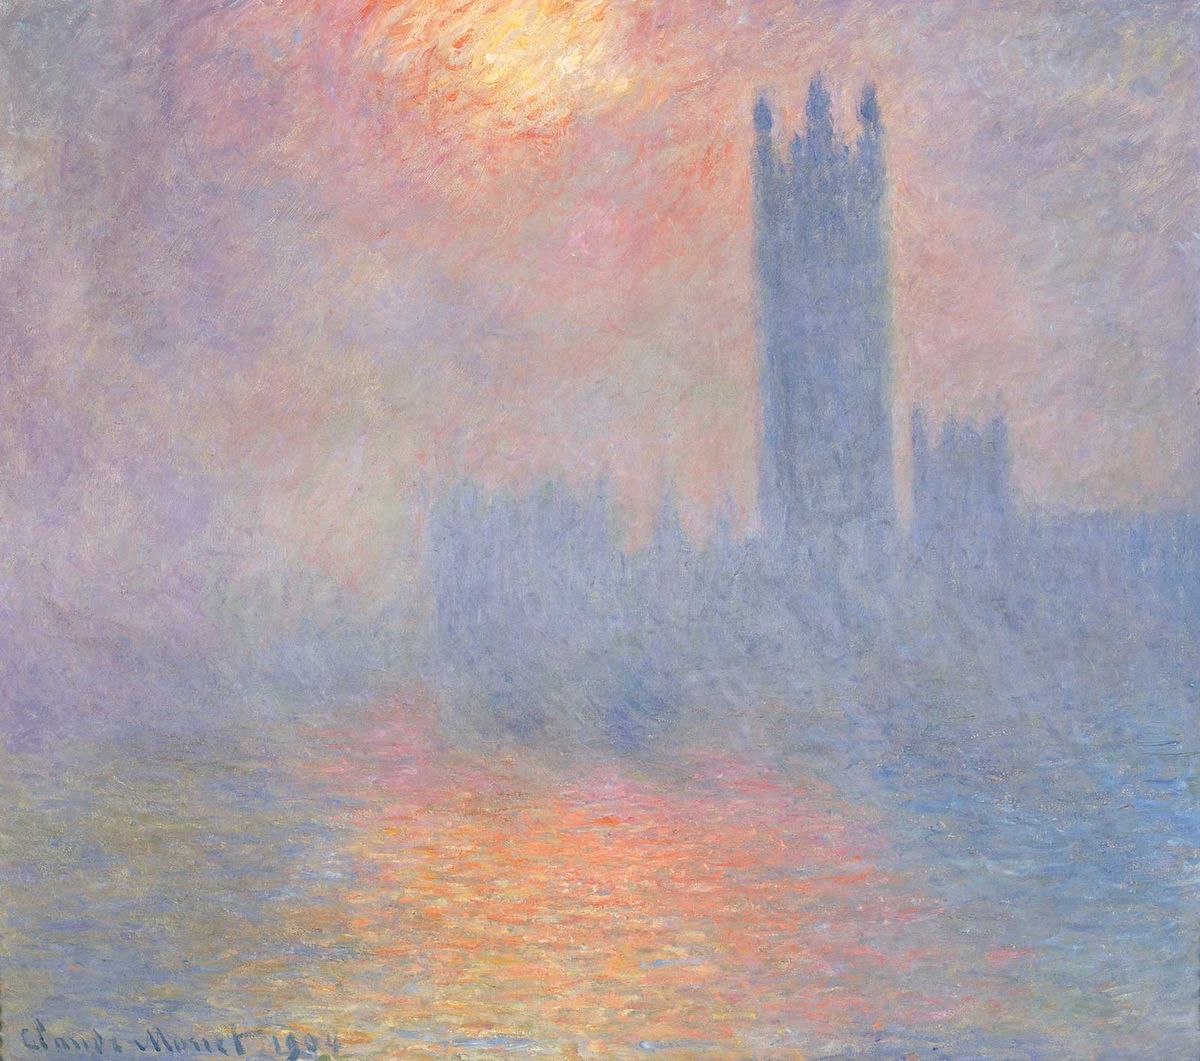 Monet’s Parliament paintings include Trouée de soleil dans le brouillard (sun breaking through the fog) (1904)

Photo © Grand Palais RMN/Musée d’Orsay/Hervé Lewandowski


